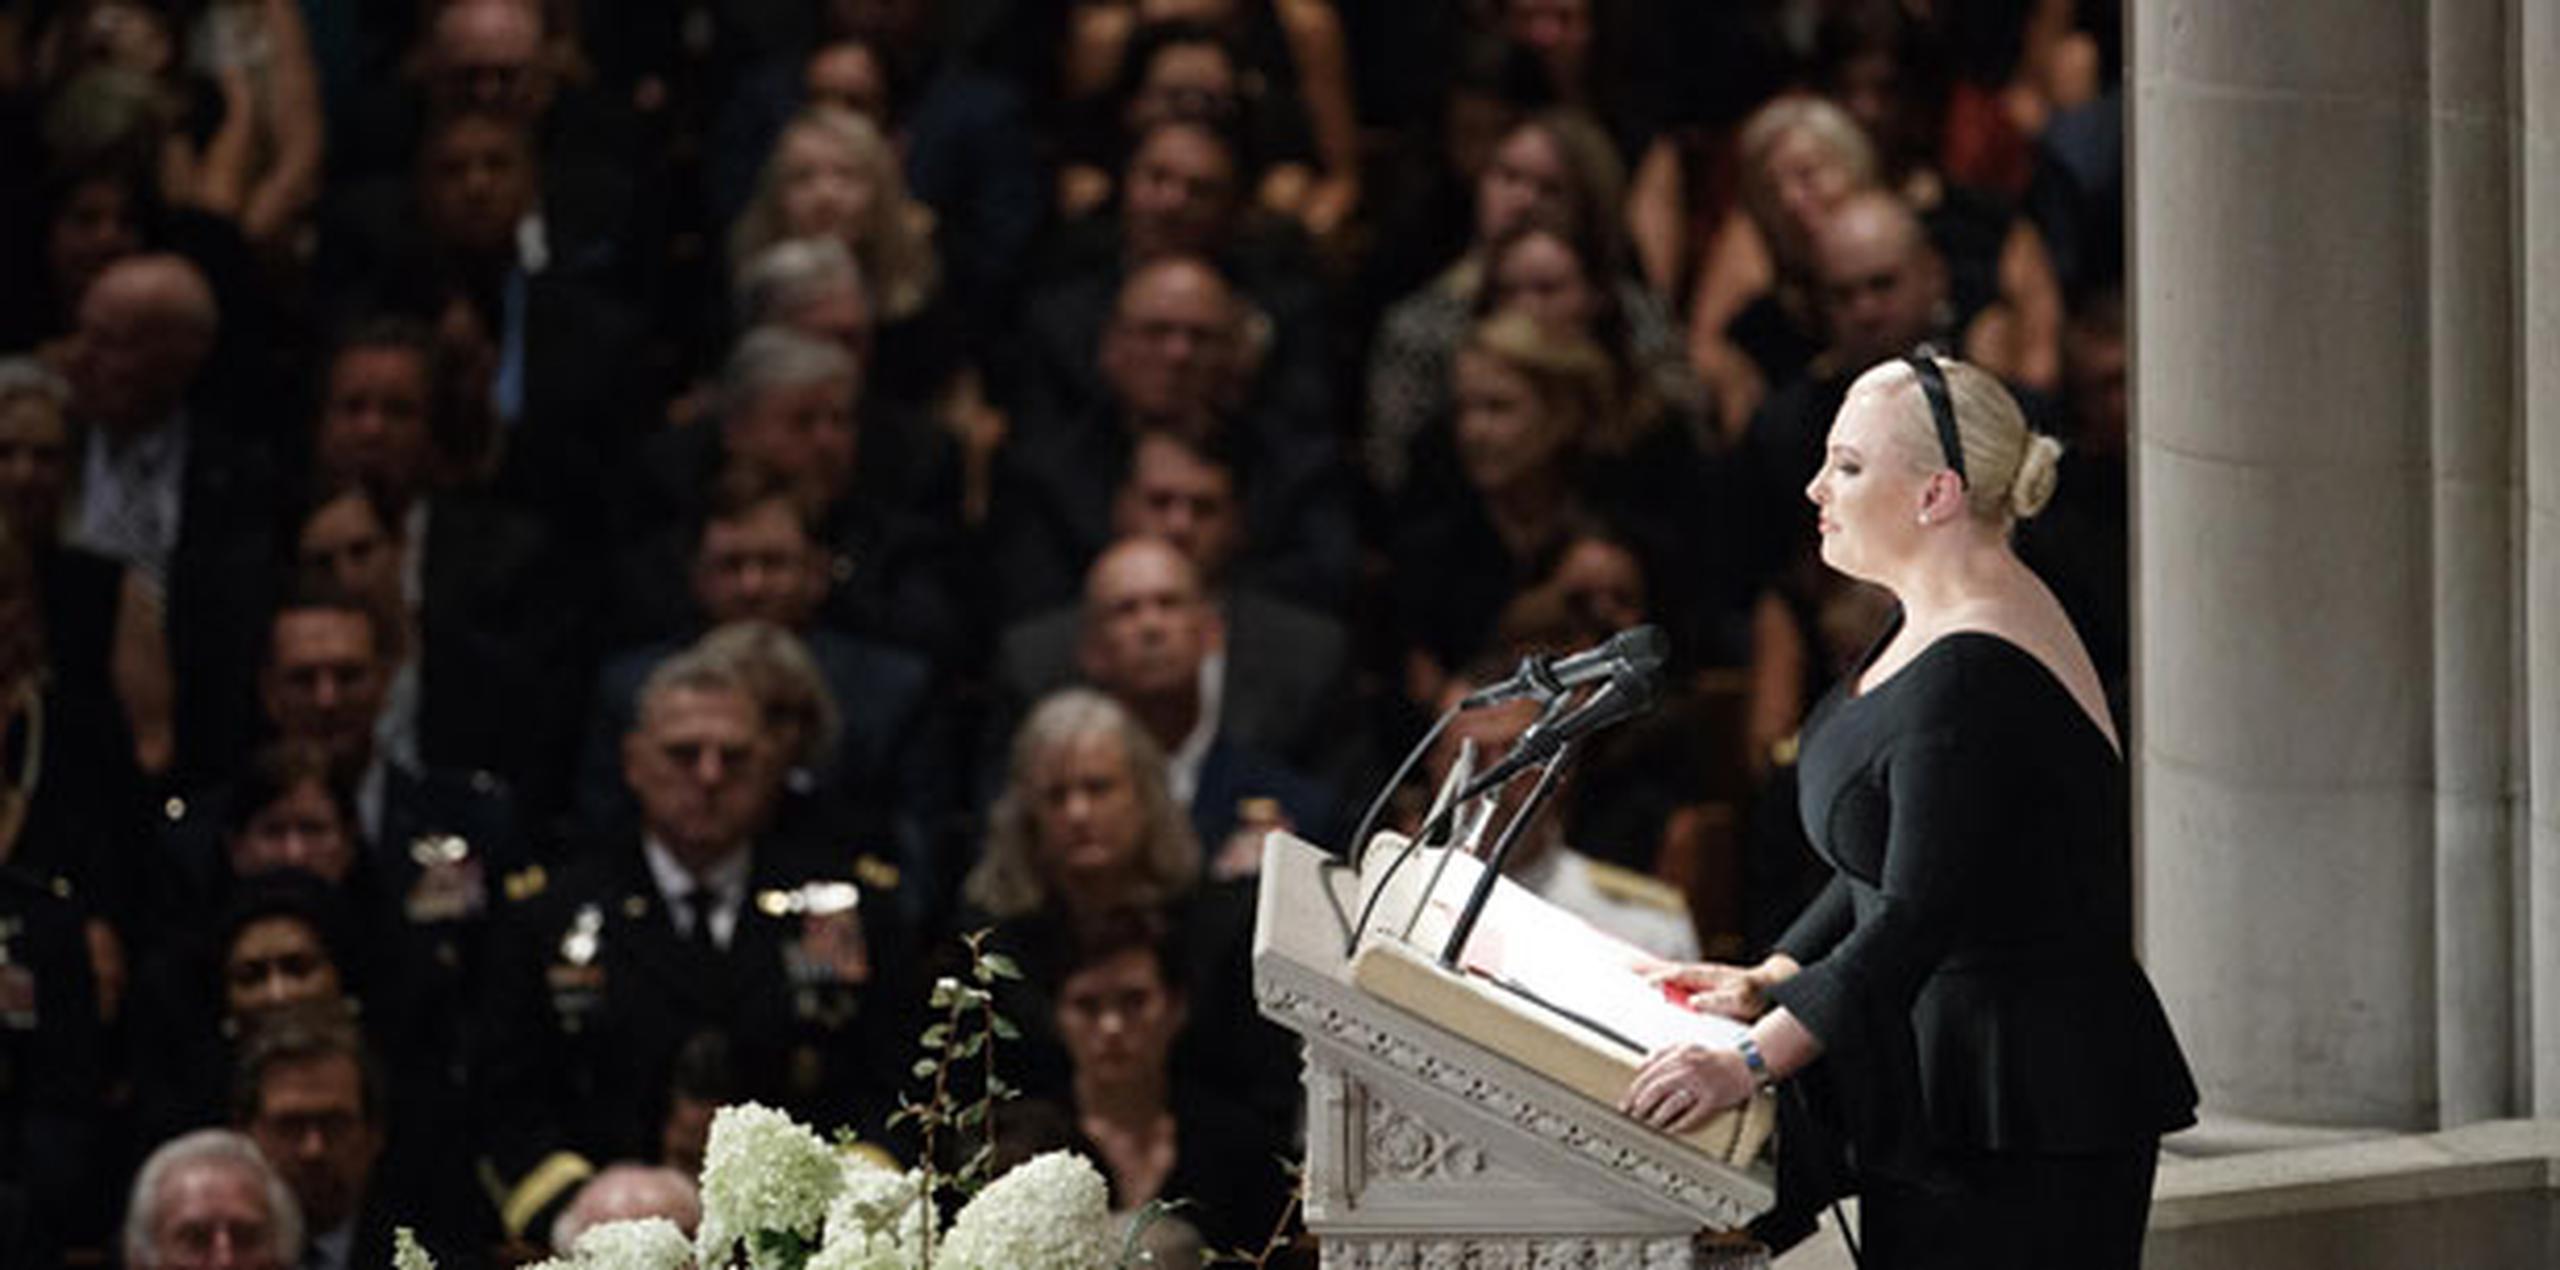 Con su voz, primero ahogándose en lágrimas y luego volviéndose enojada, Meghan McCain dijo que los asistentes a la ceremonia "nos reunimos aquí para lamentar el fallecimiento de un representante de la grandeza estadounidense". (EFE)